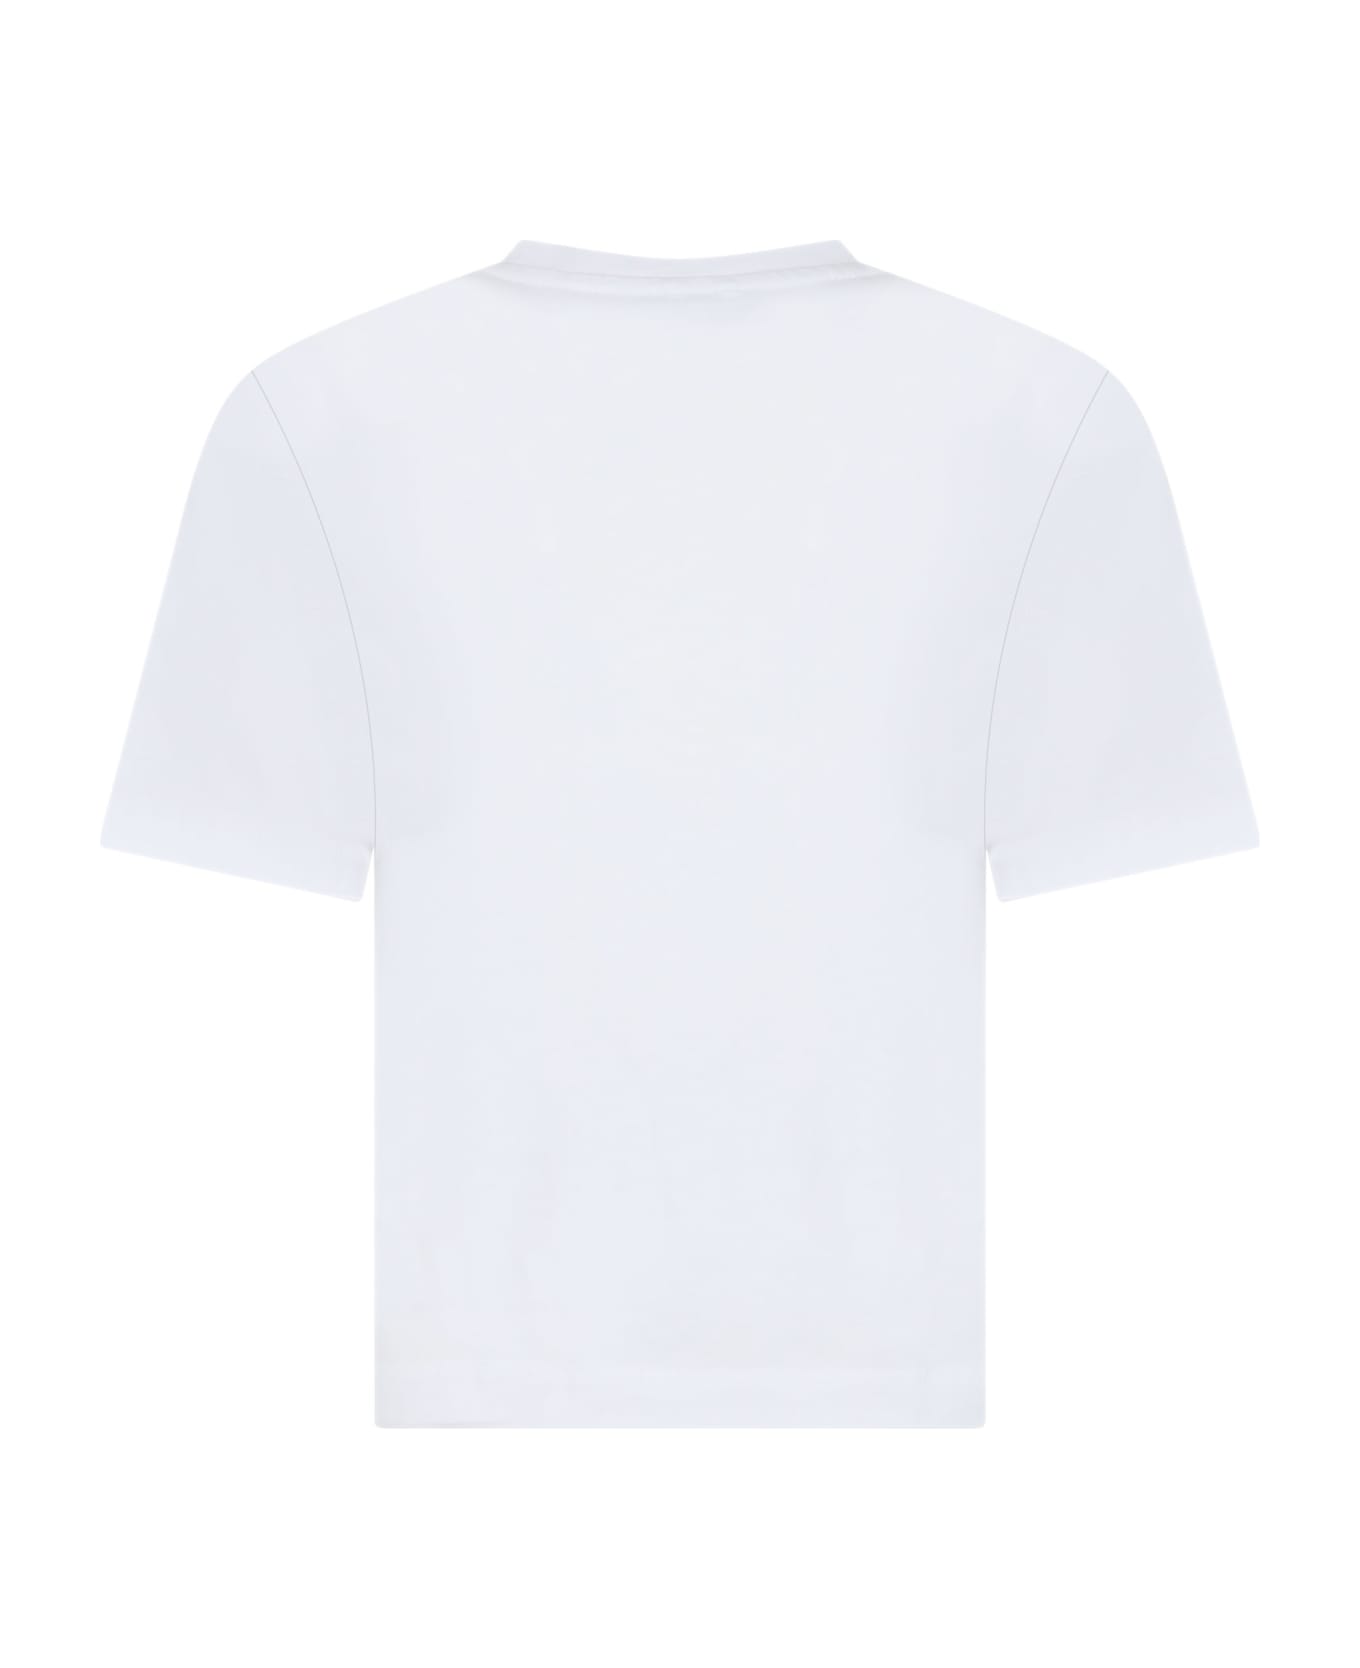 Stella McCartney Kids White T-shirt For Girl With Multicolor Logo - WHITE